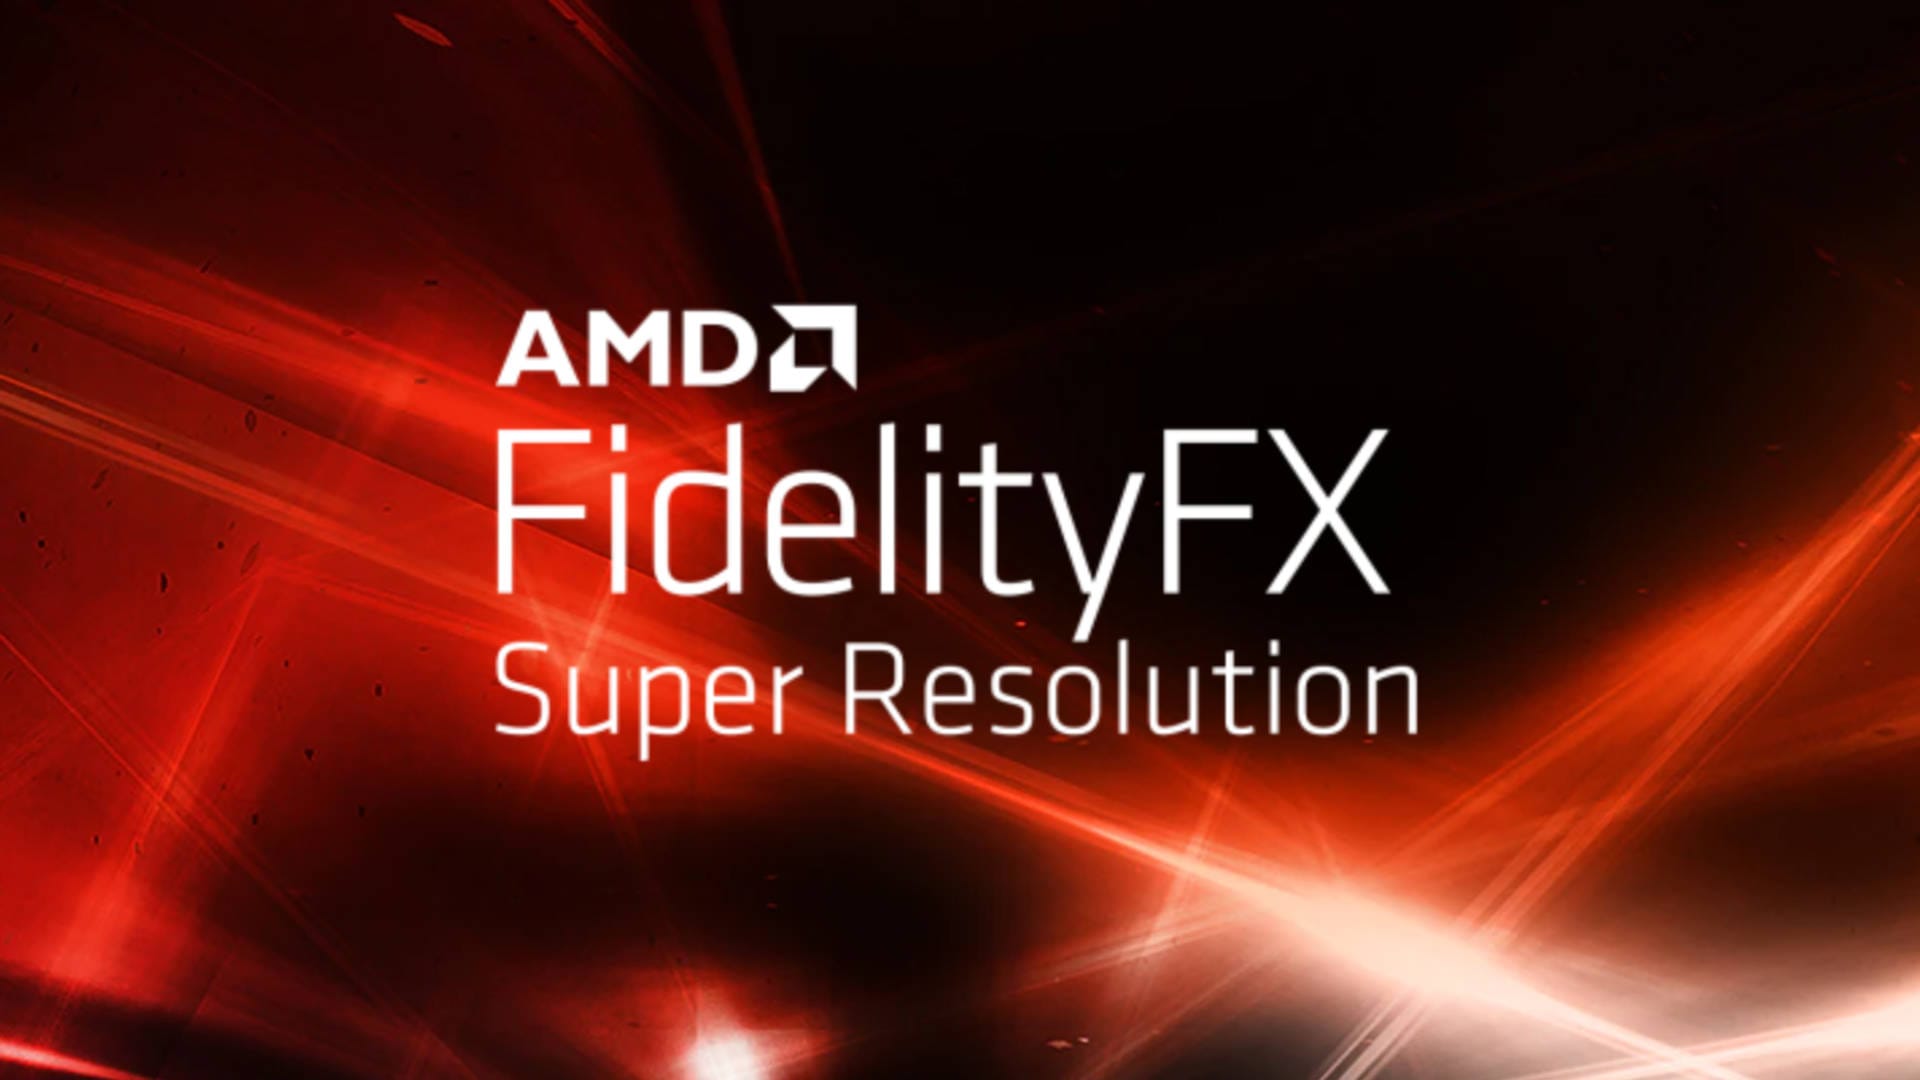 AMD FSR FidelityFX Super Resolution cover